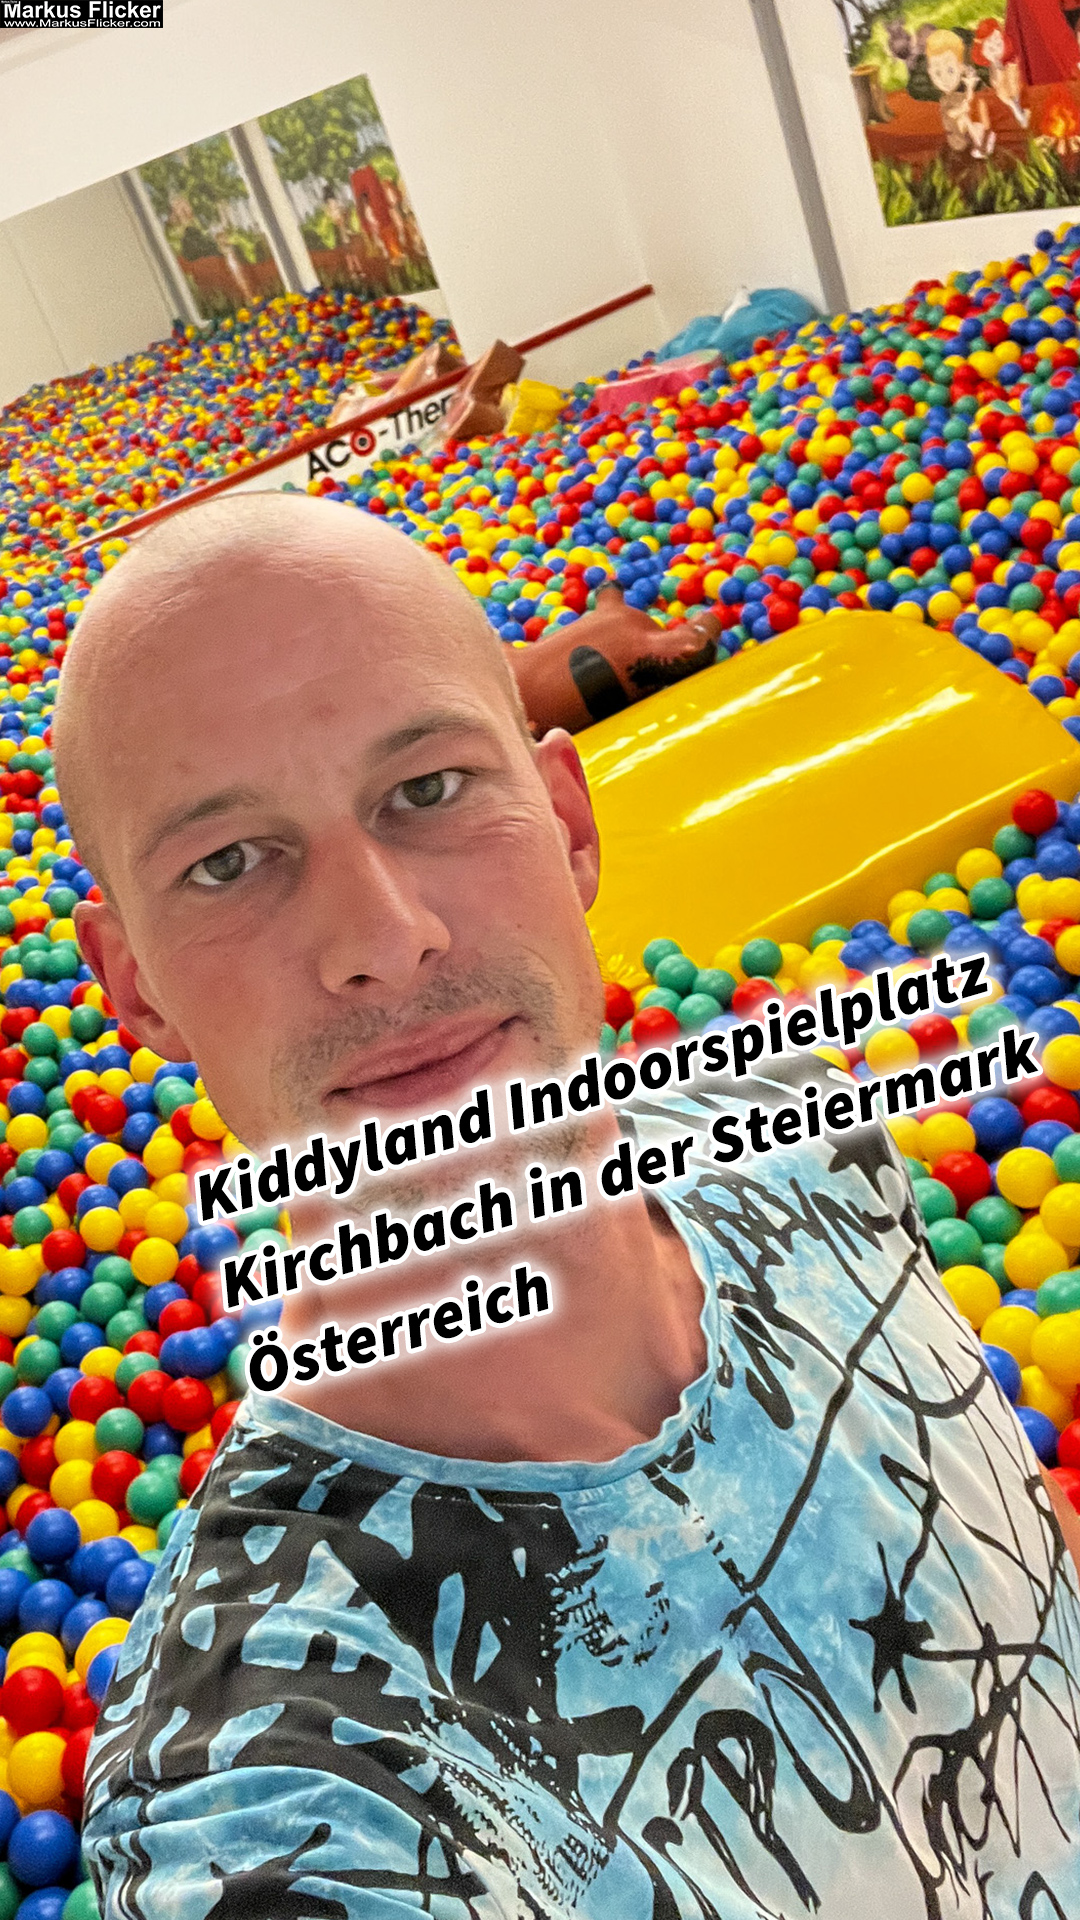 Kiddyland Indoorspielplatz Kirchbach in der Steiermark Österreich #visitstyria #visitaustria